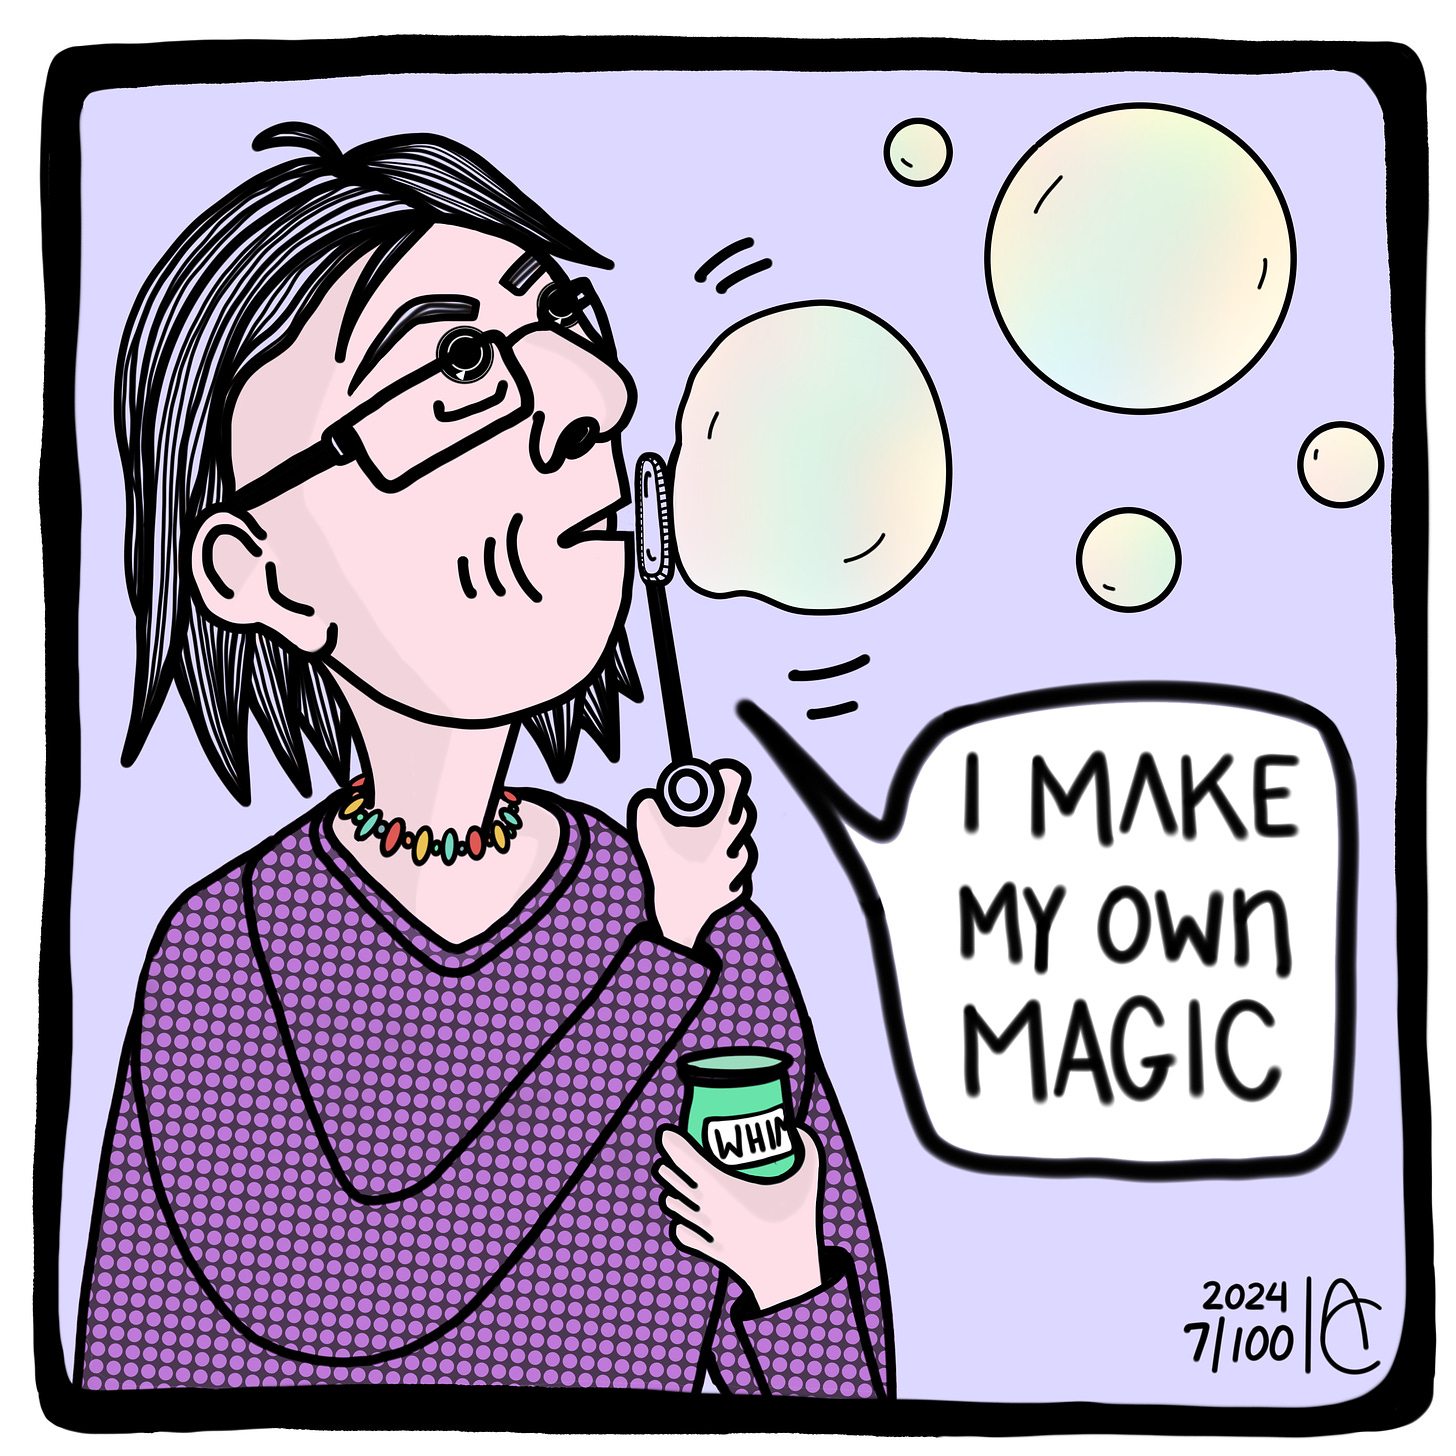 7/100: I make my own magic